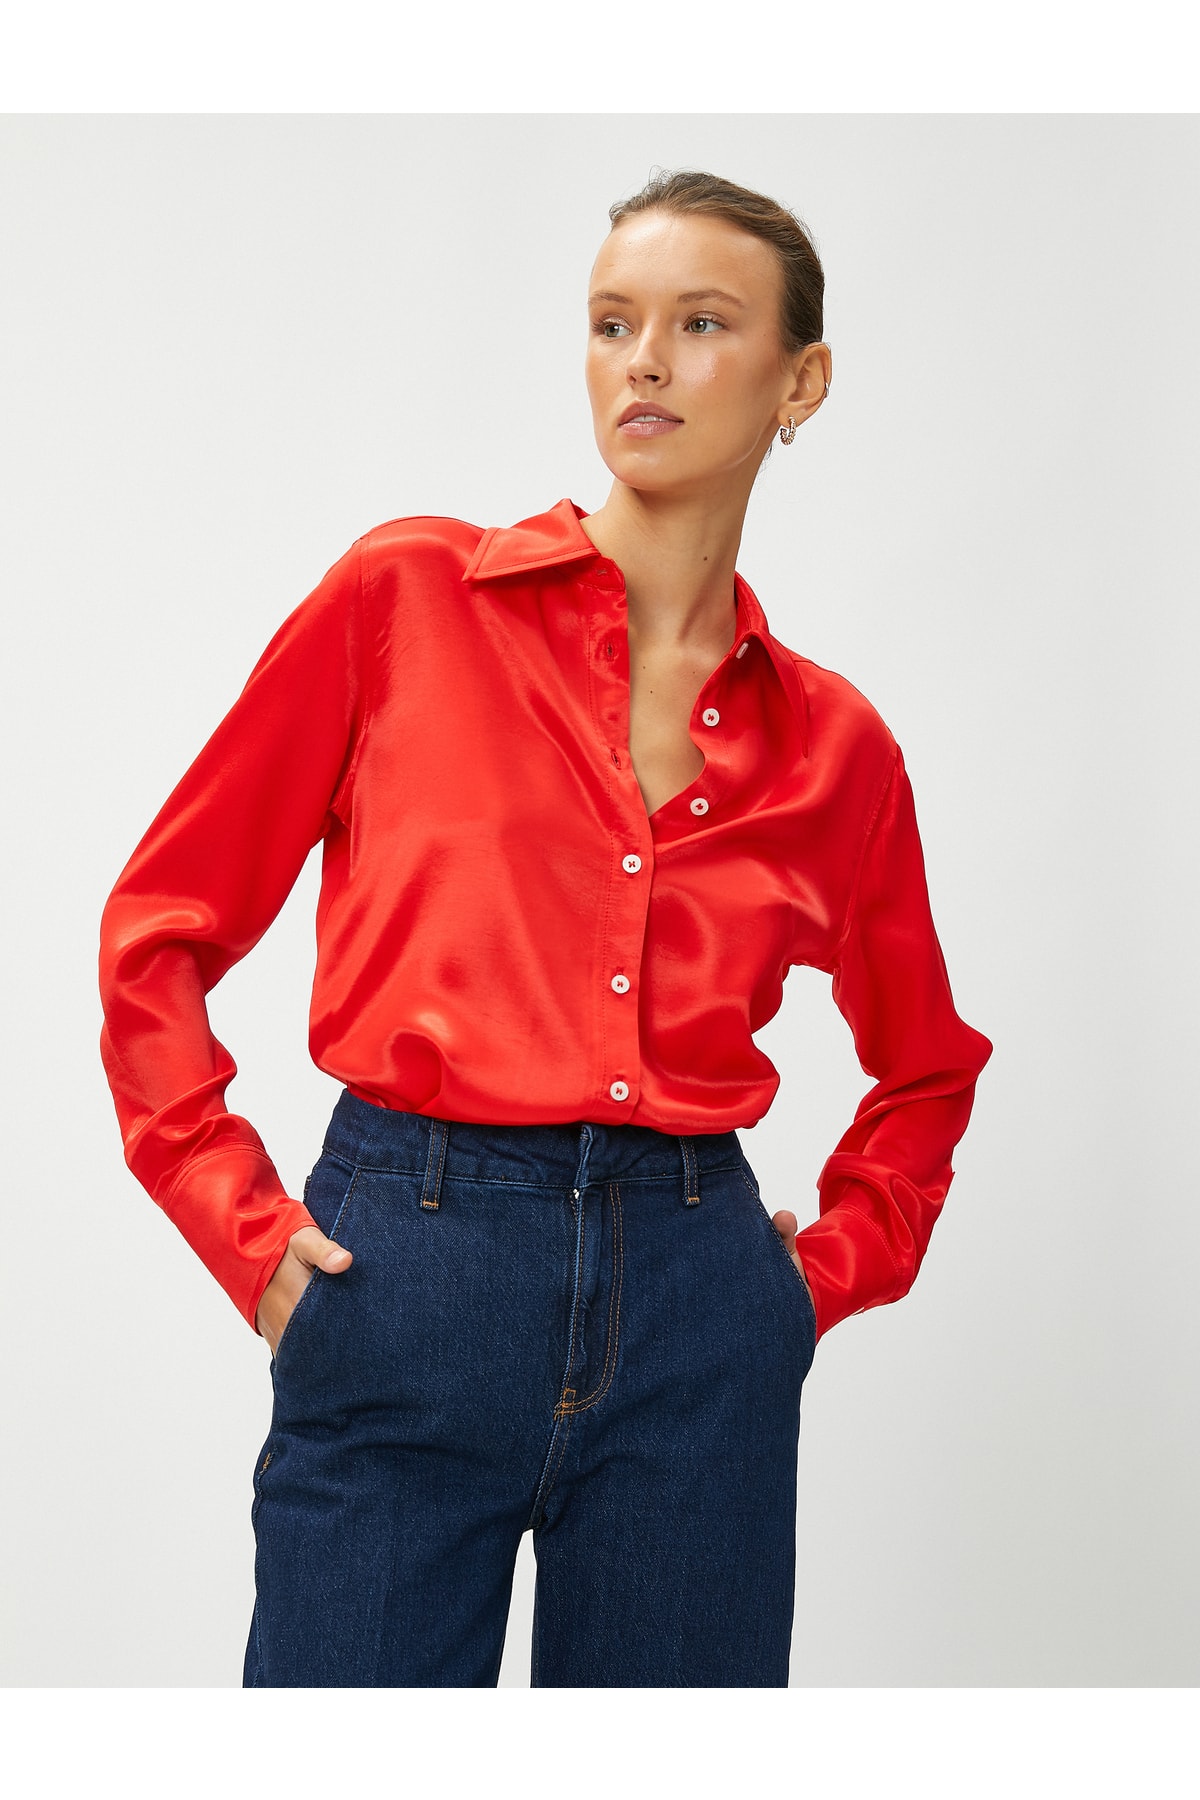 Koton Hemd Rot Regular Fit Fast ausverkauft